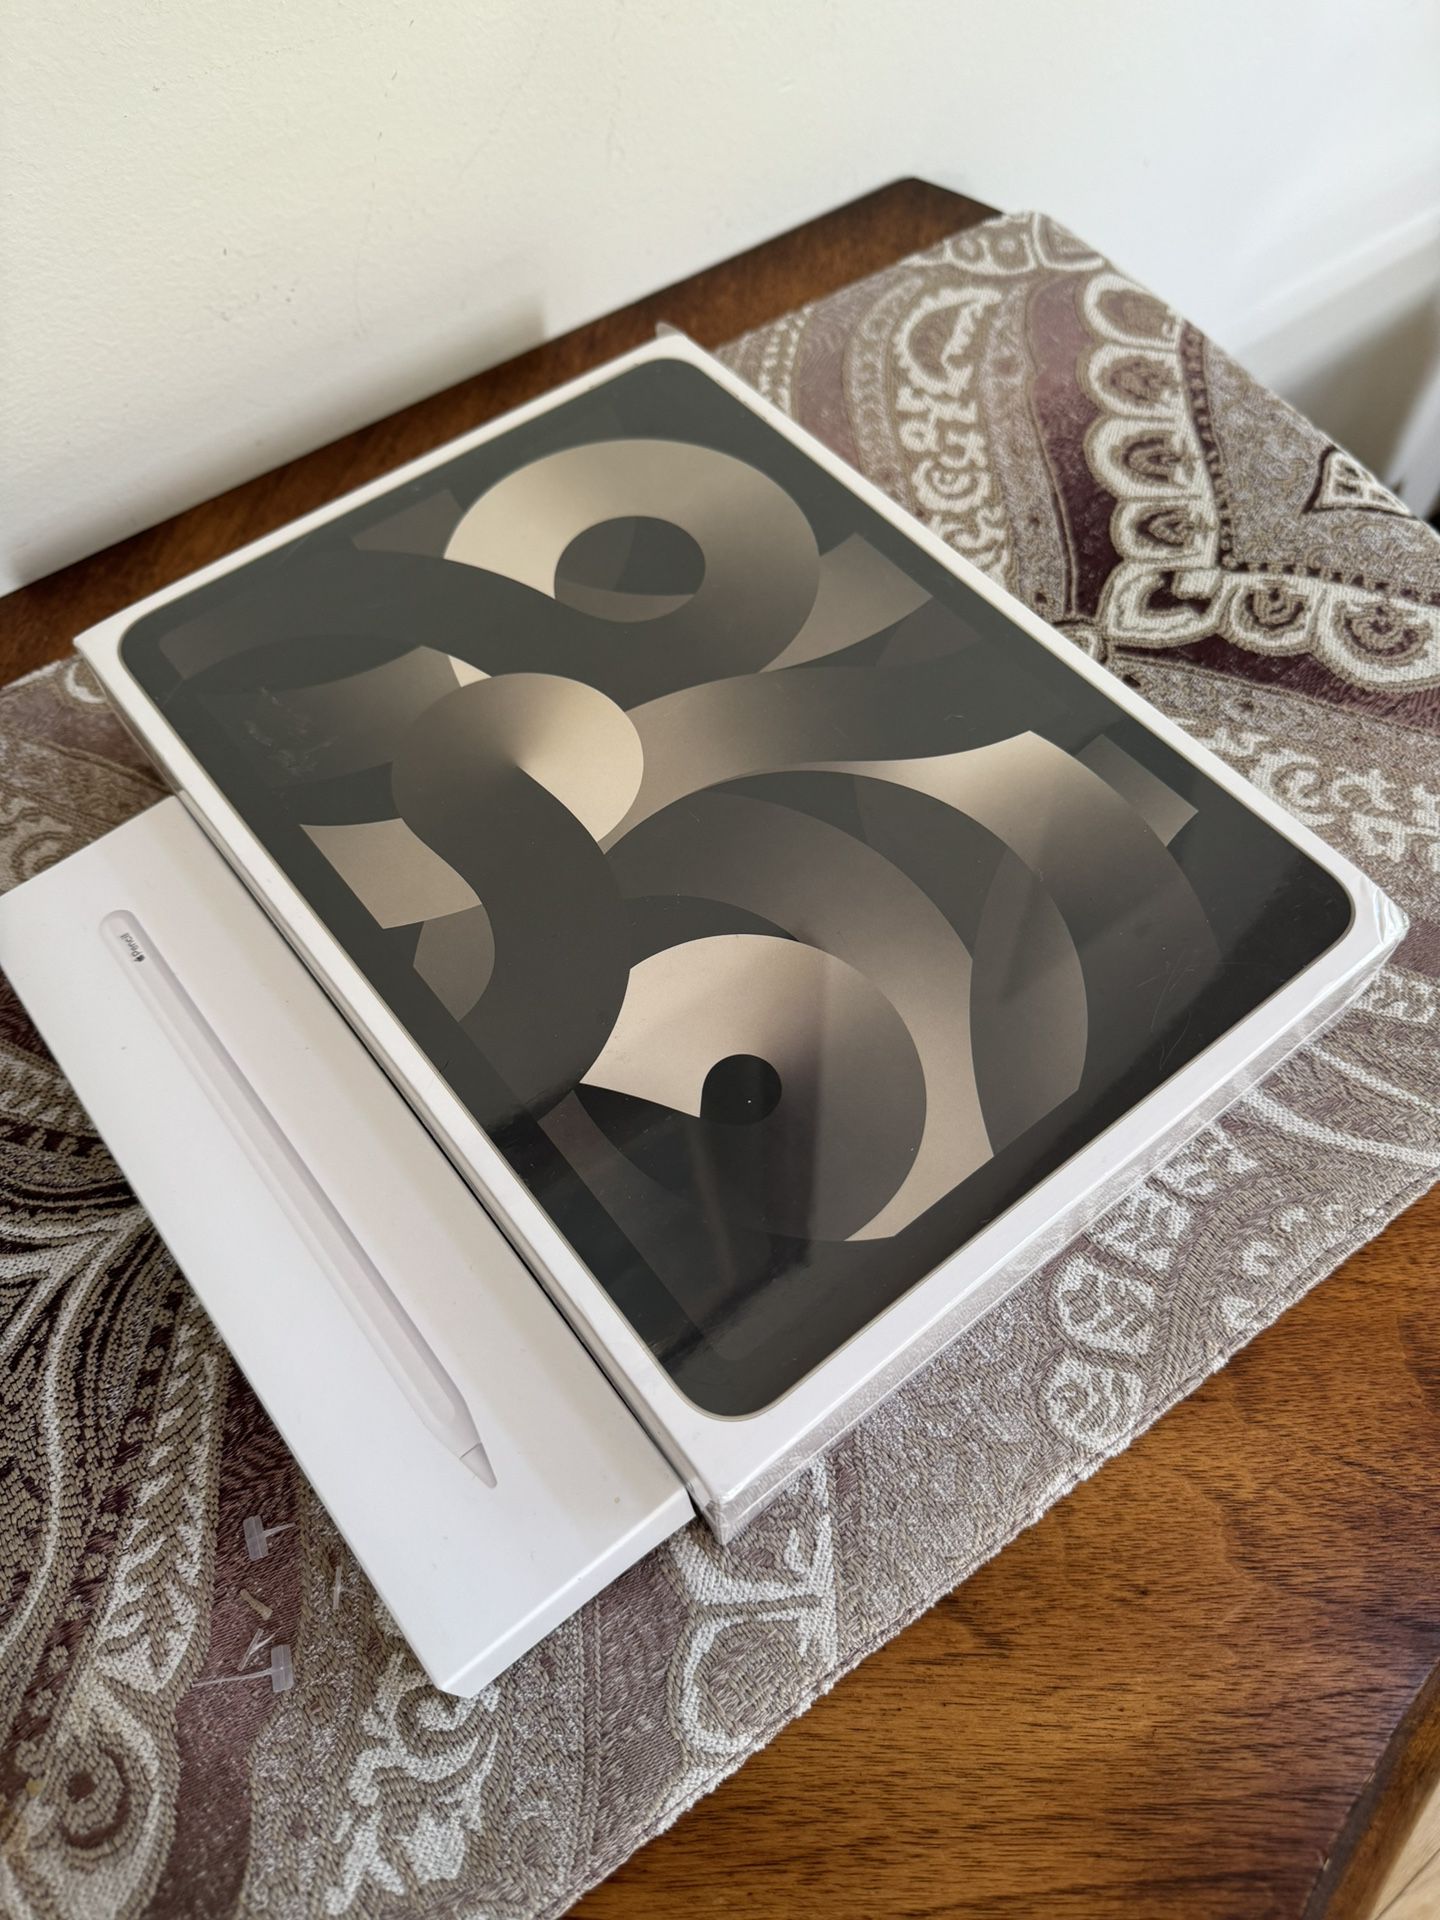 iPad Air (5th Generation) Wi-Fi